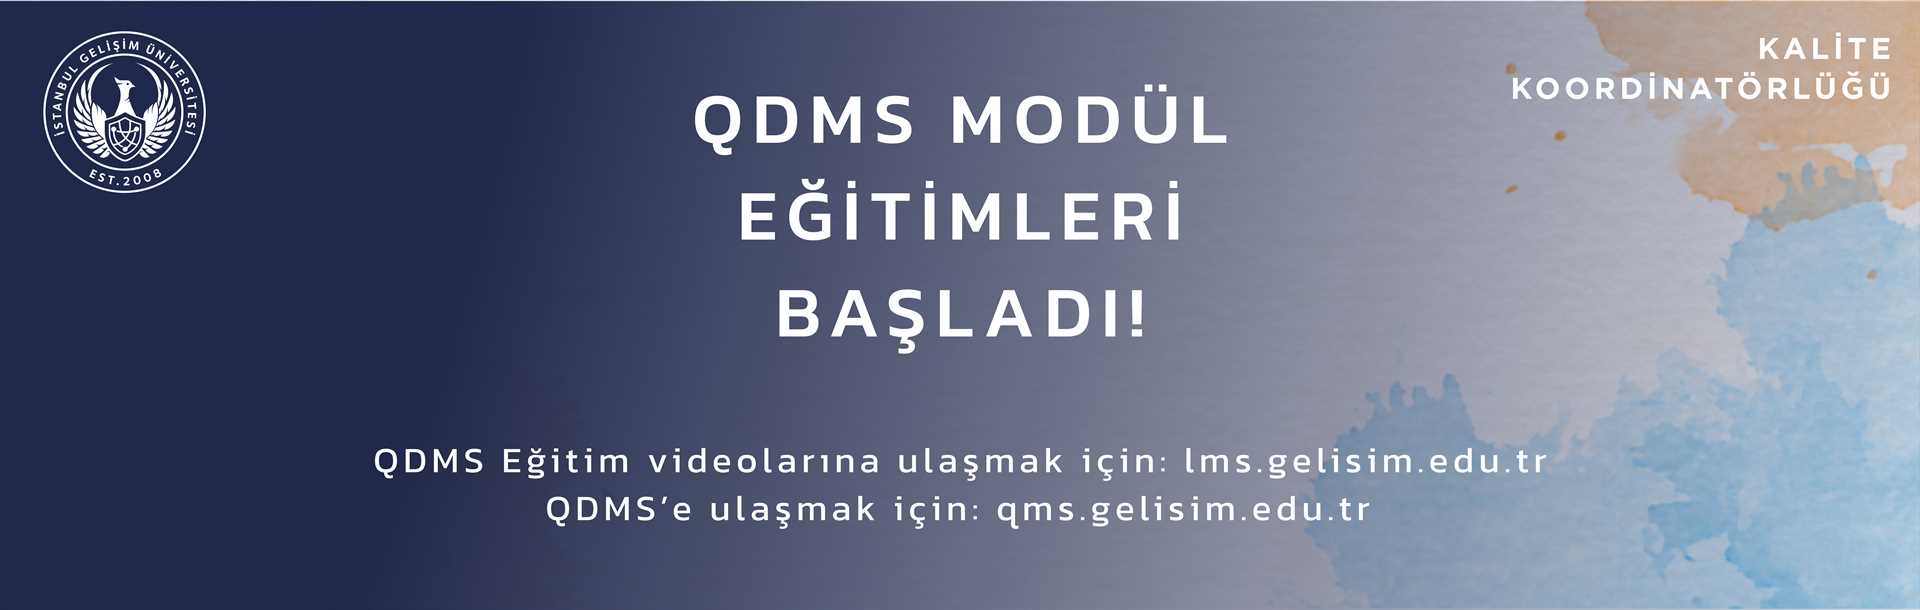 QDMS 